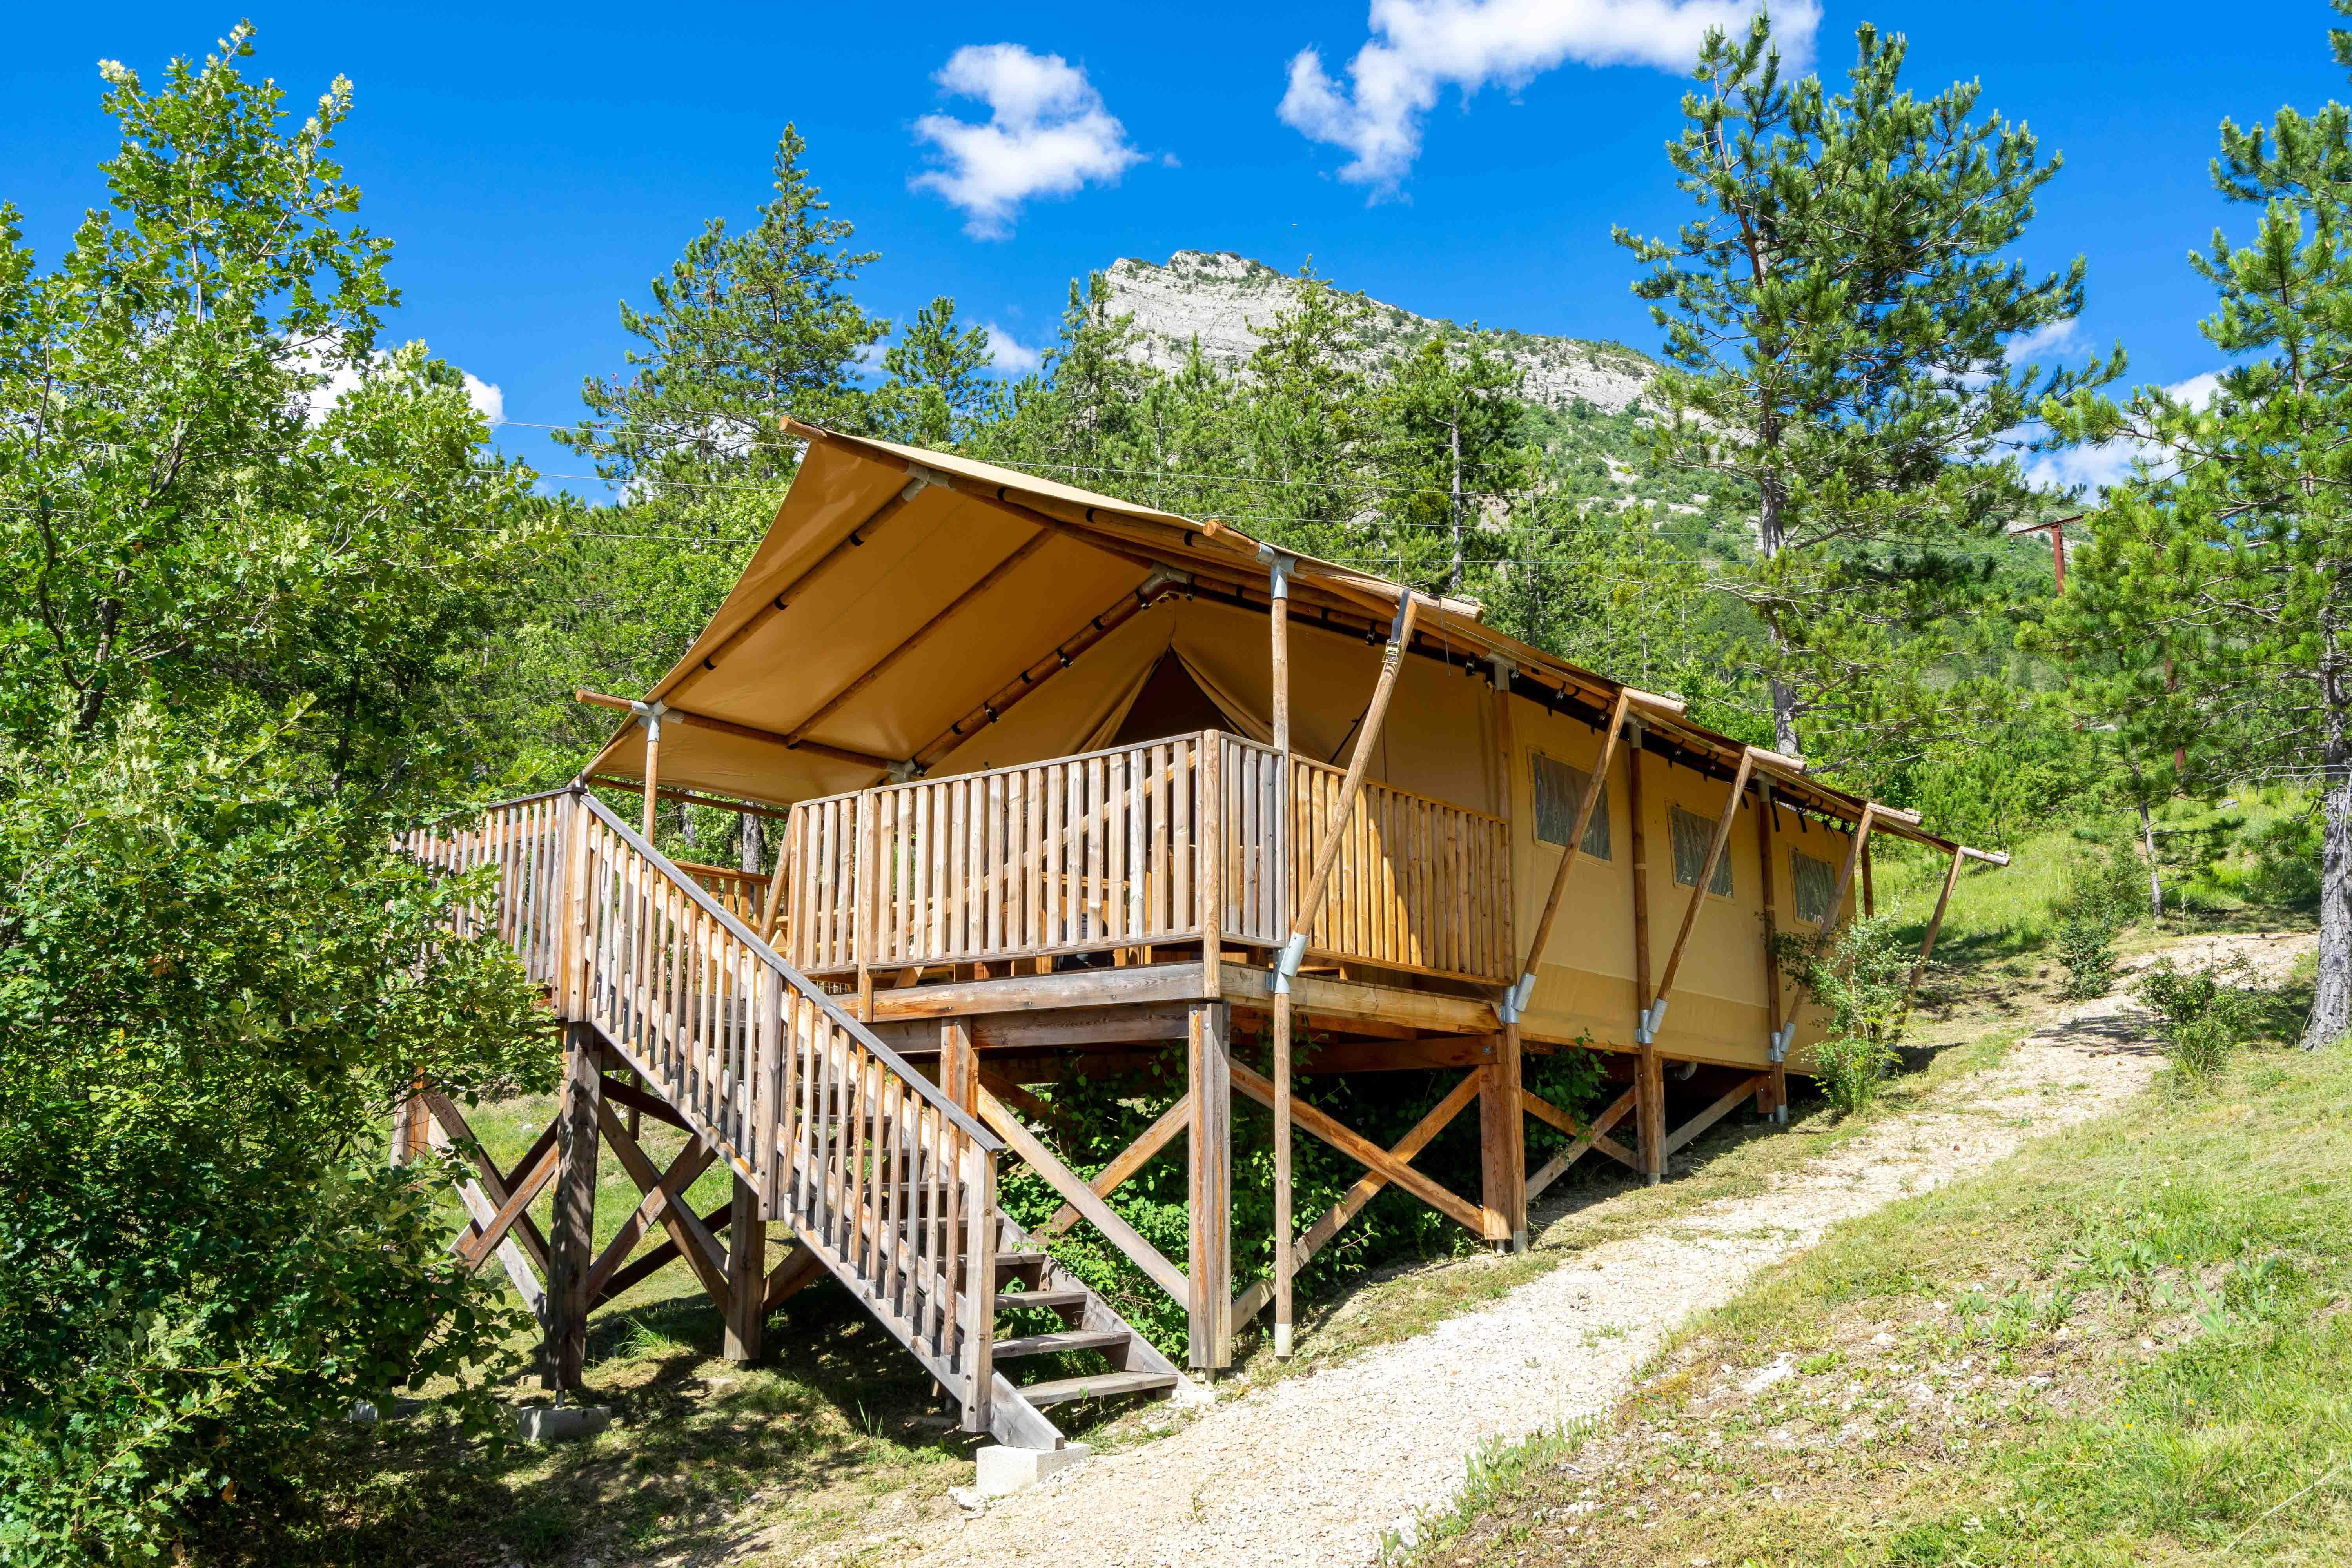 Location - Tente Lodge Premium 35M² 3 Chambres + Terrasse 16M² (Avec Sanitaire) - Flower Camping Le Clot du Jay